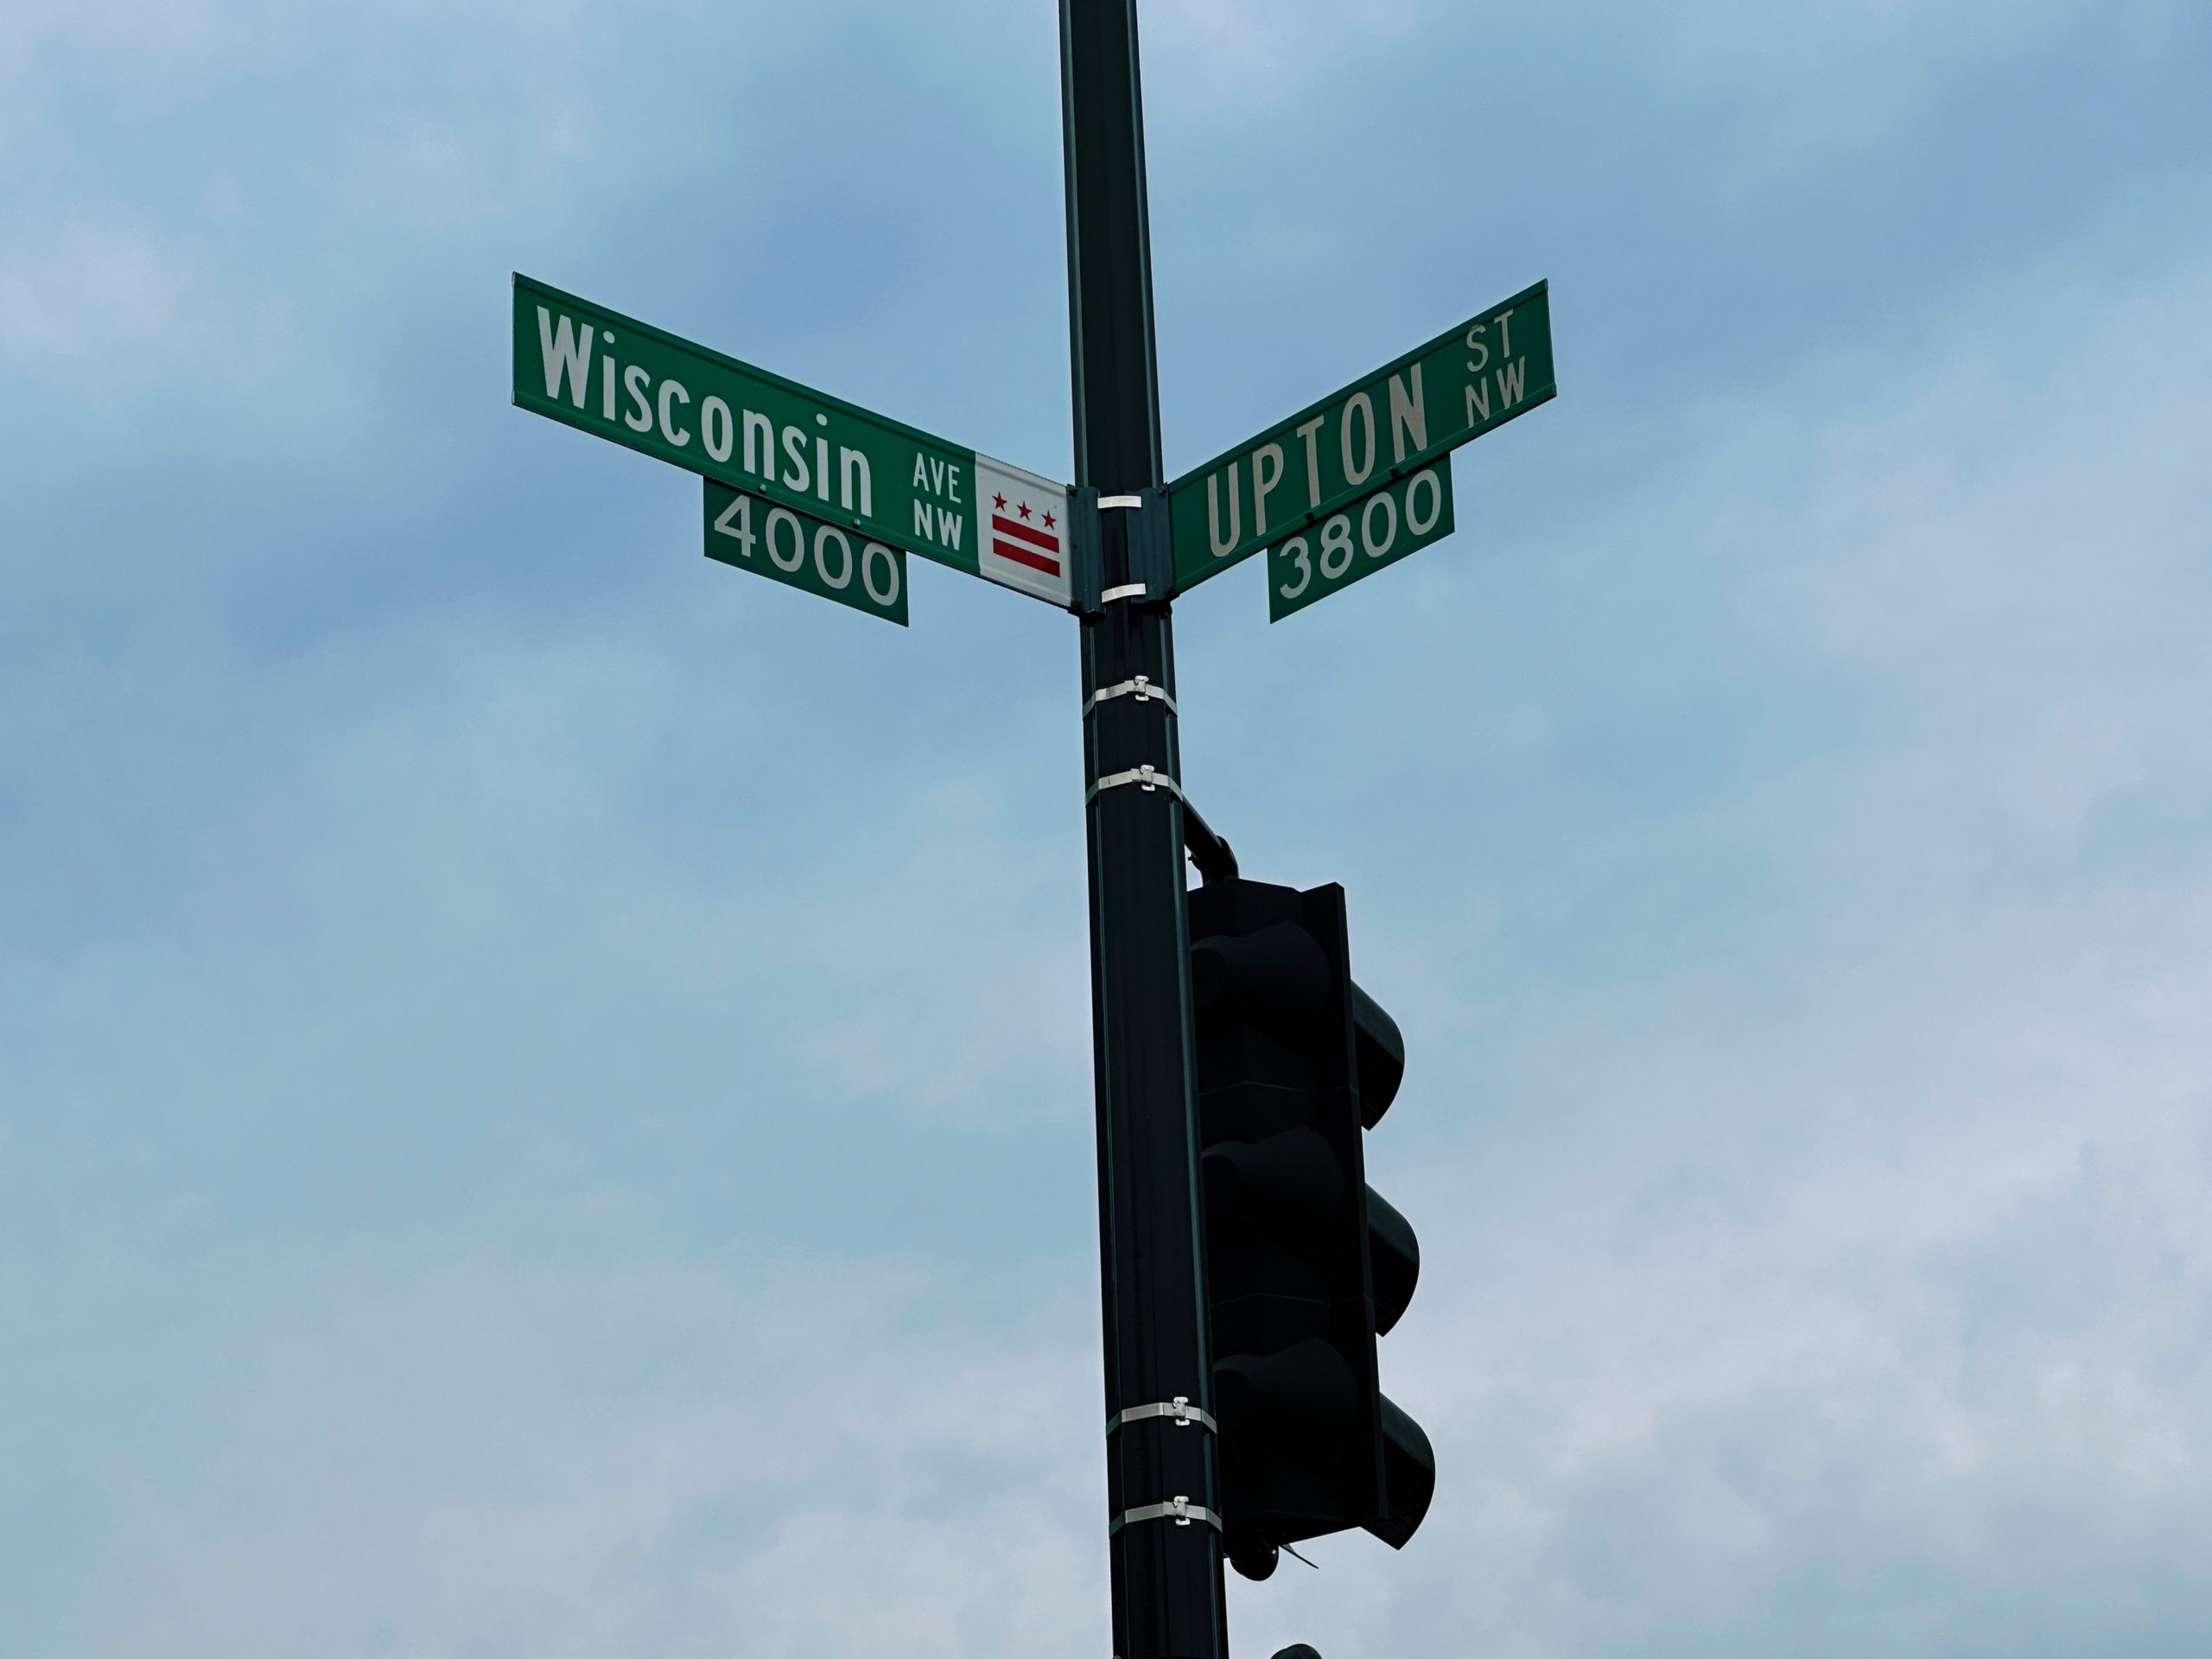 居民期待改变，华盛顿特区为威斯康星大道提供指导。